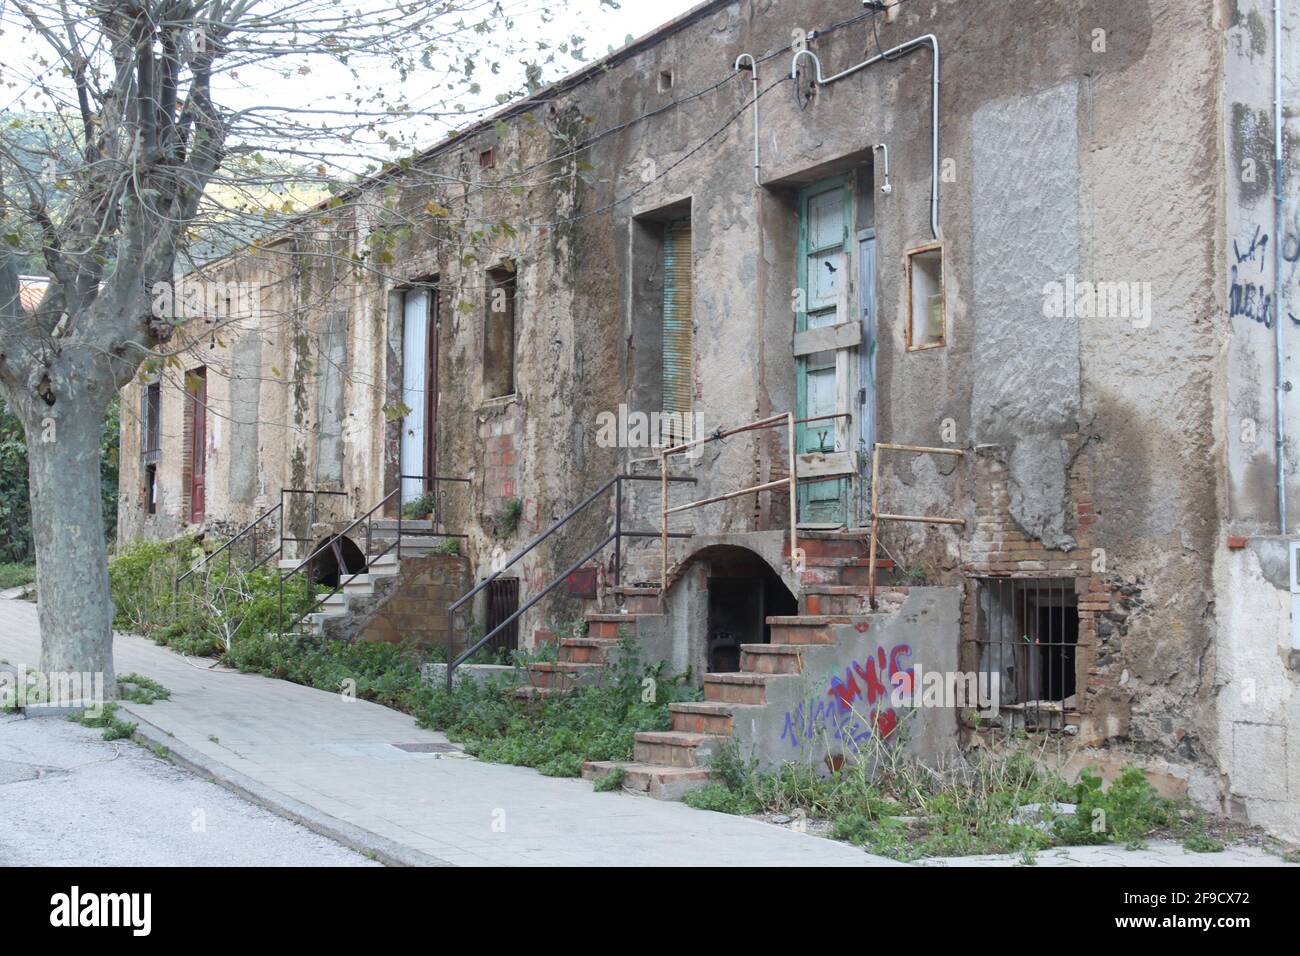 Trostlos altes Gebäude in einem deprimierenden Zustand Stockfoto